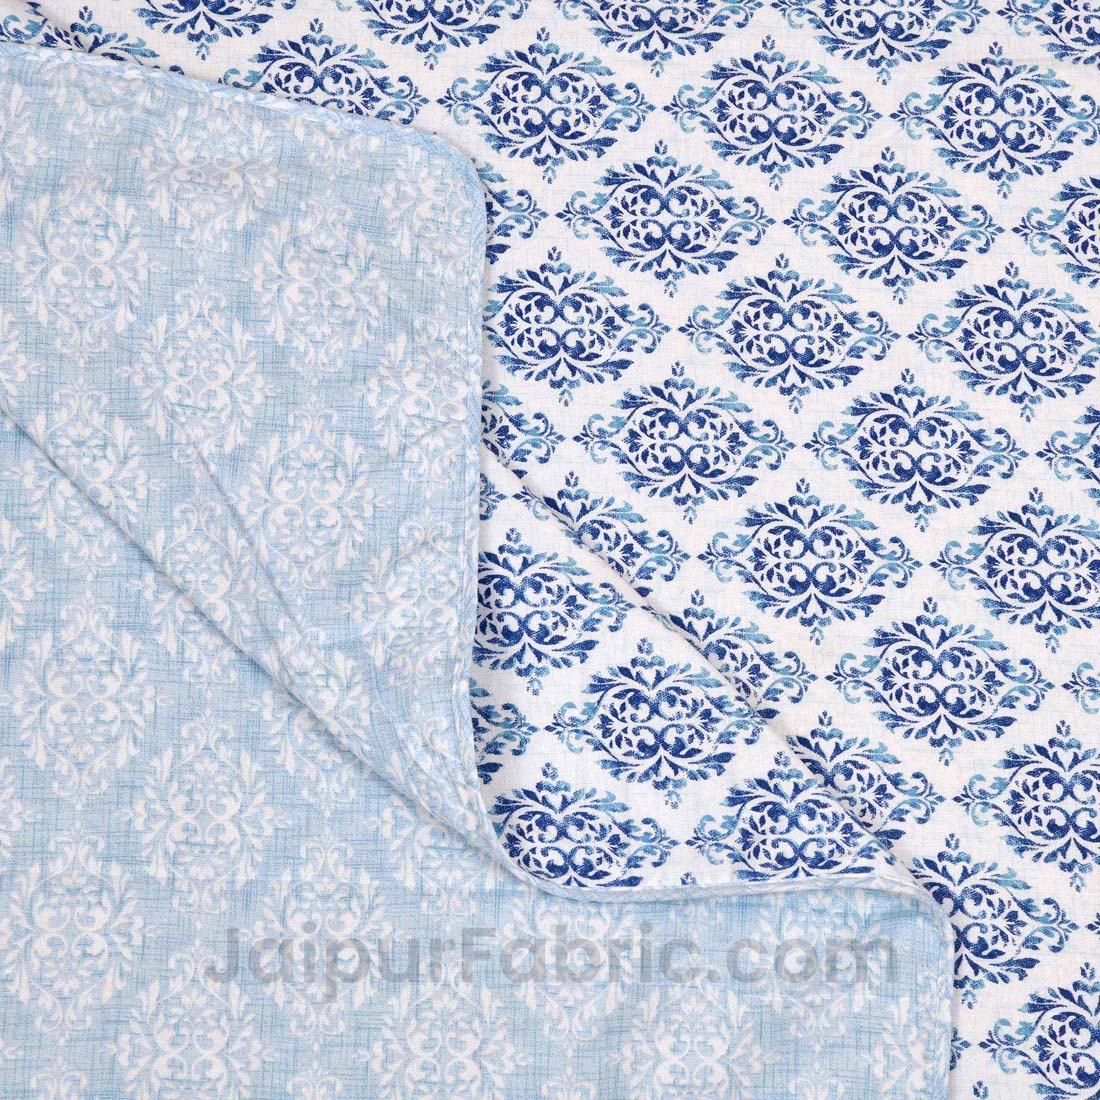 JaipurFabric® Blue Ethnic Single Bed Reversible Dohar